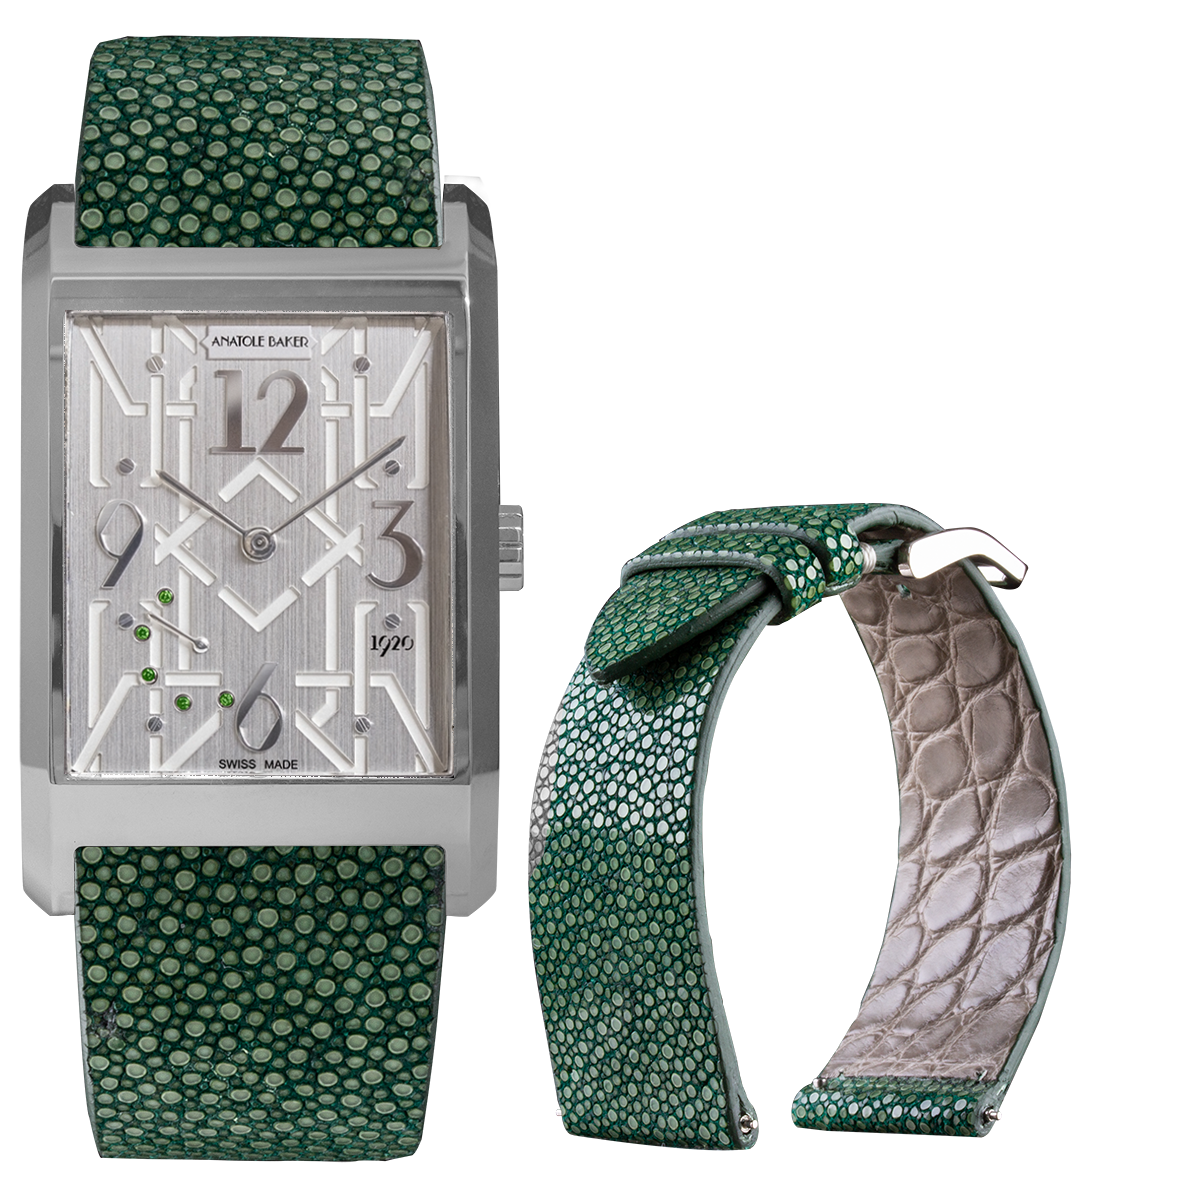 Montre ANATOLE BAKER 1920 - Dandy tsavorites vertes - Bracelet Galuchat vert